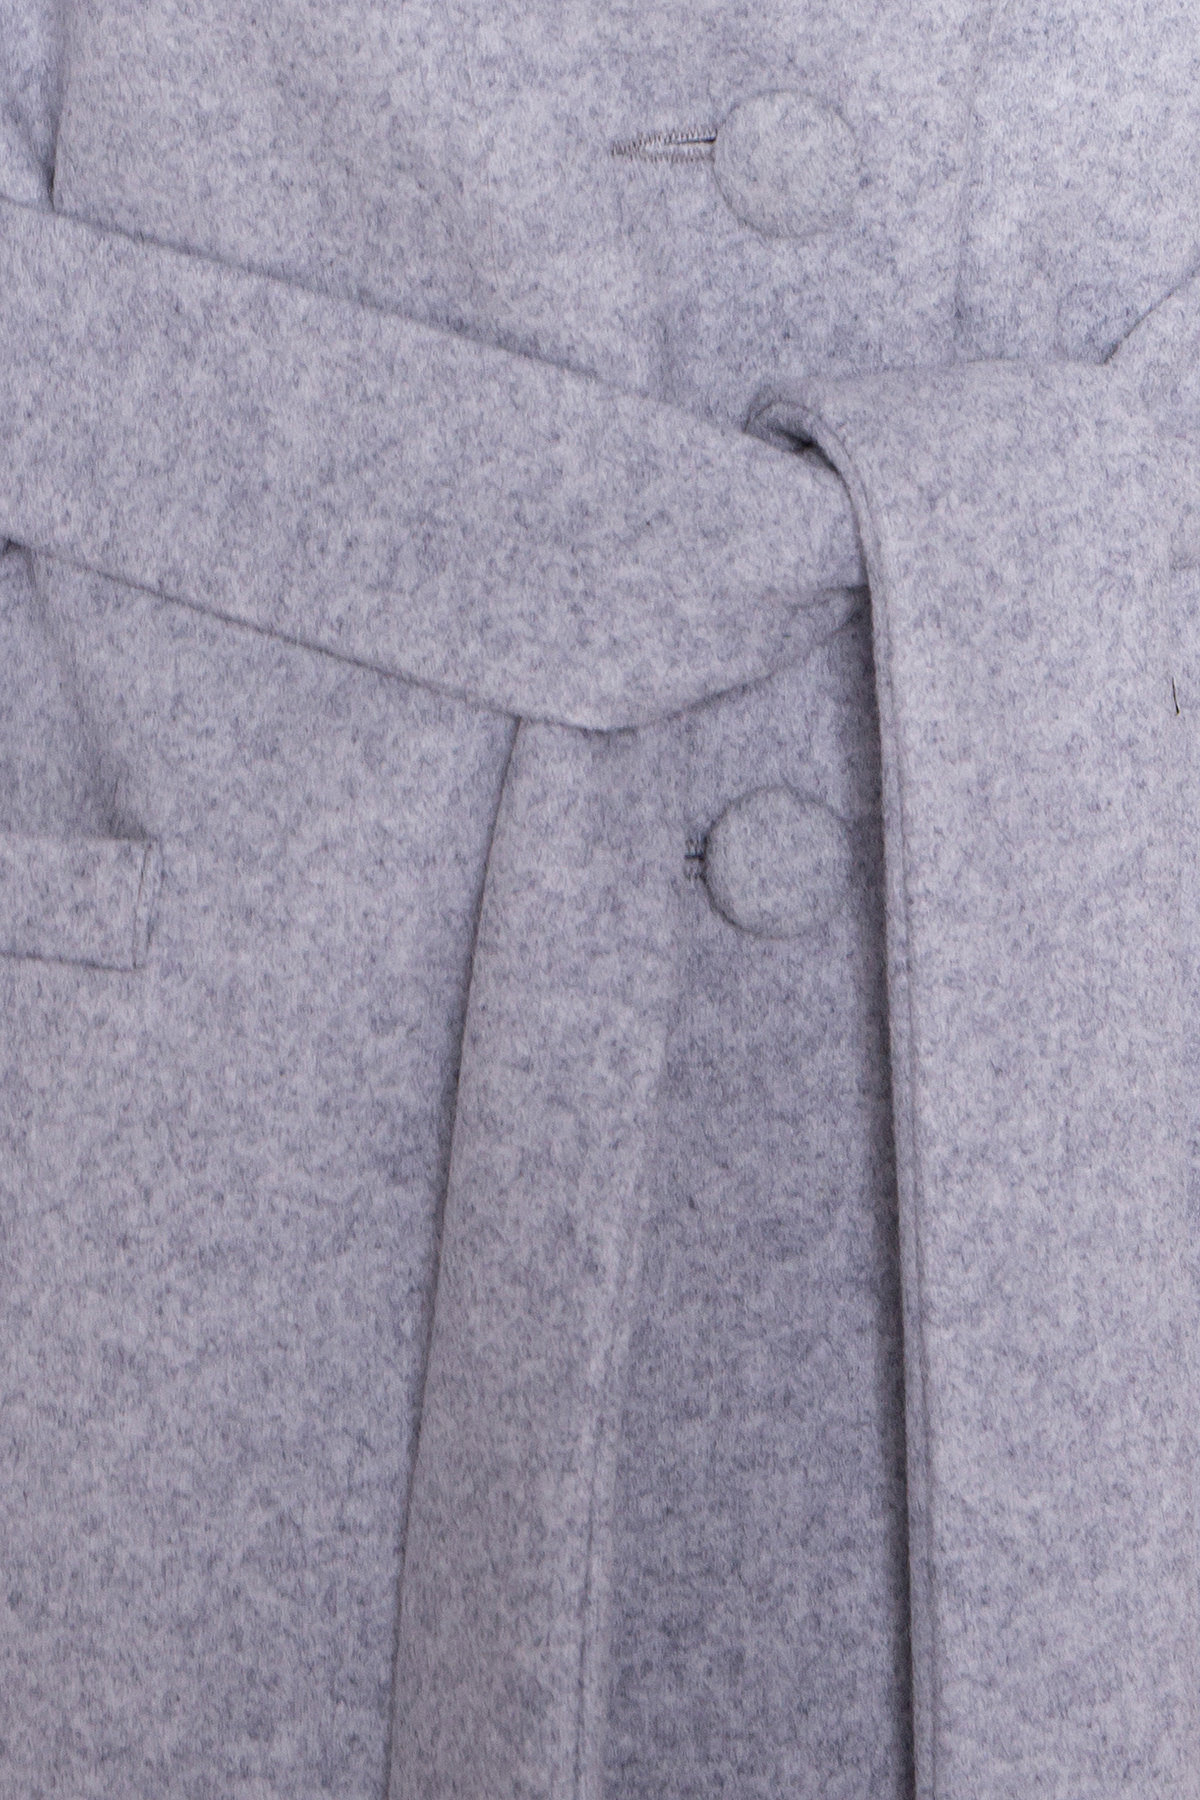 Длинное пальто зима Вива макси 8345 АРТ. 44507 Цвет: Серый Светлый 33 - фото 7, интернет магазин tm-modus.ru